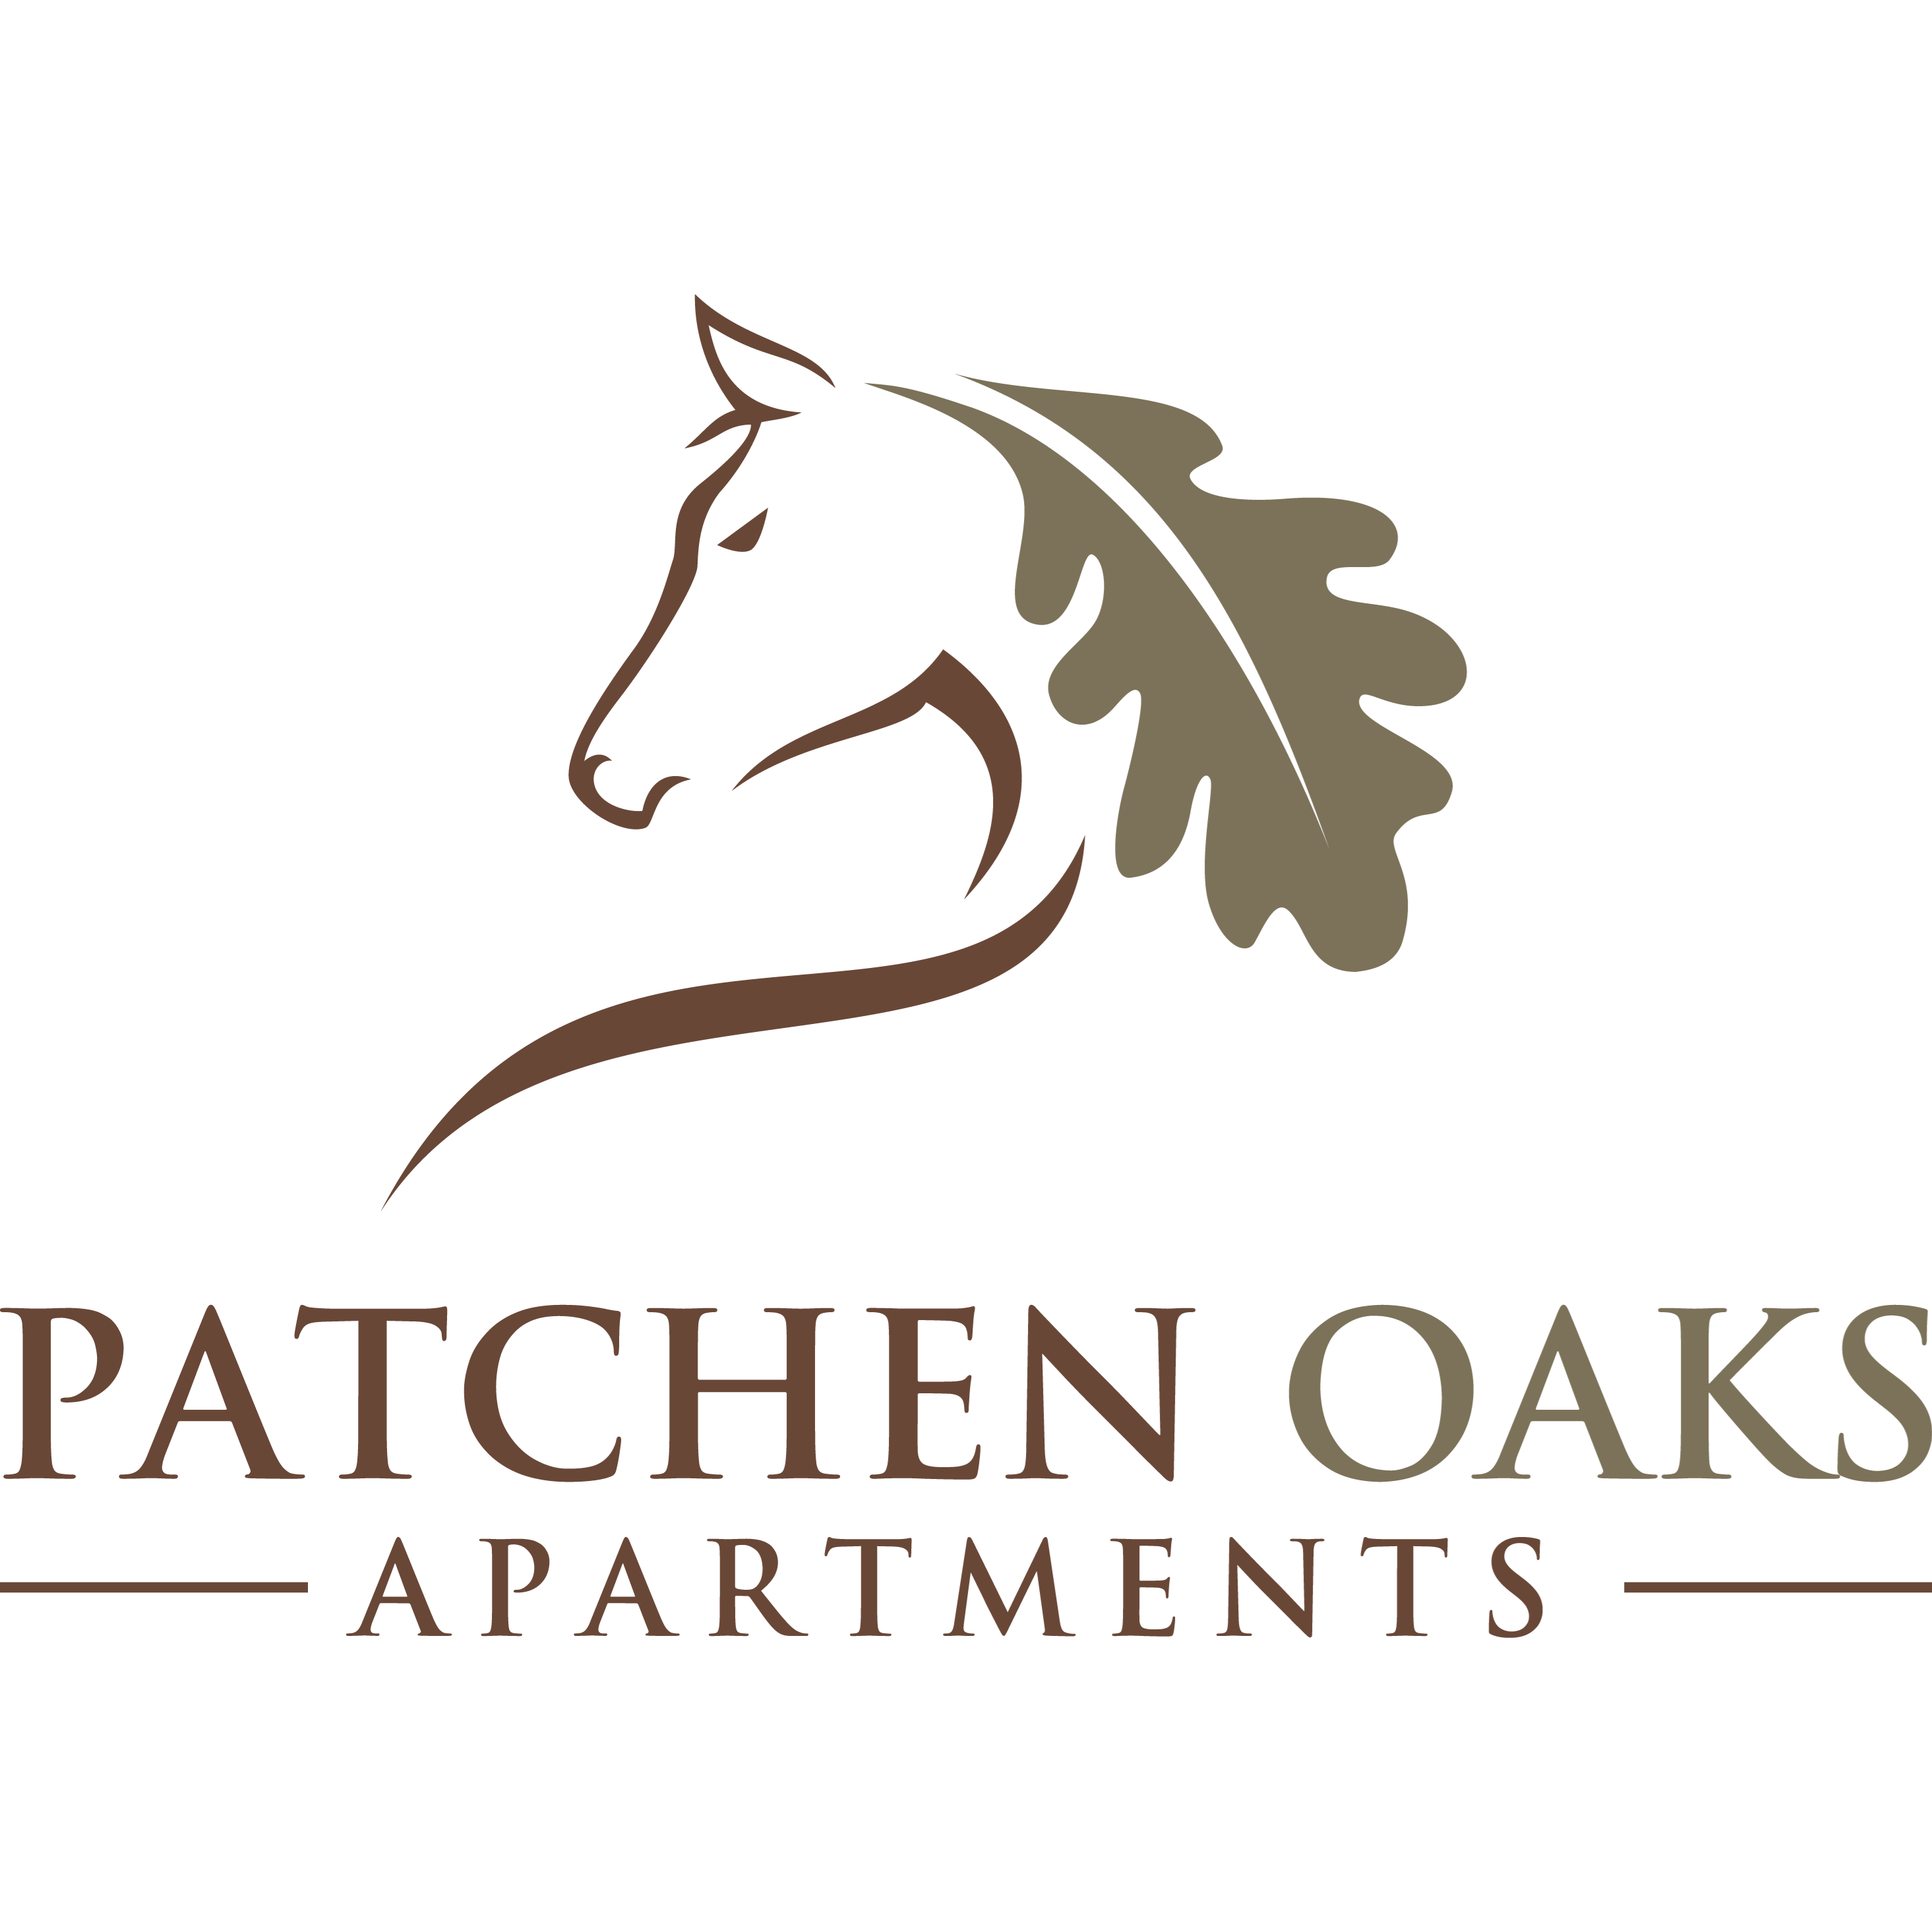 Patchen Oaks Apartments - Lexington, KY 40517 - (859)266-9500 | ShowMeLocal.com